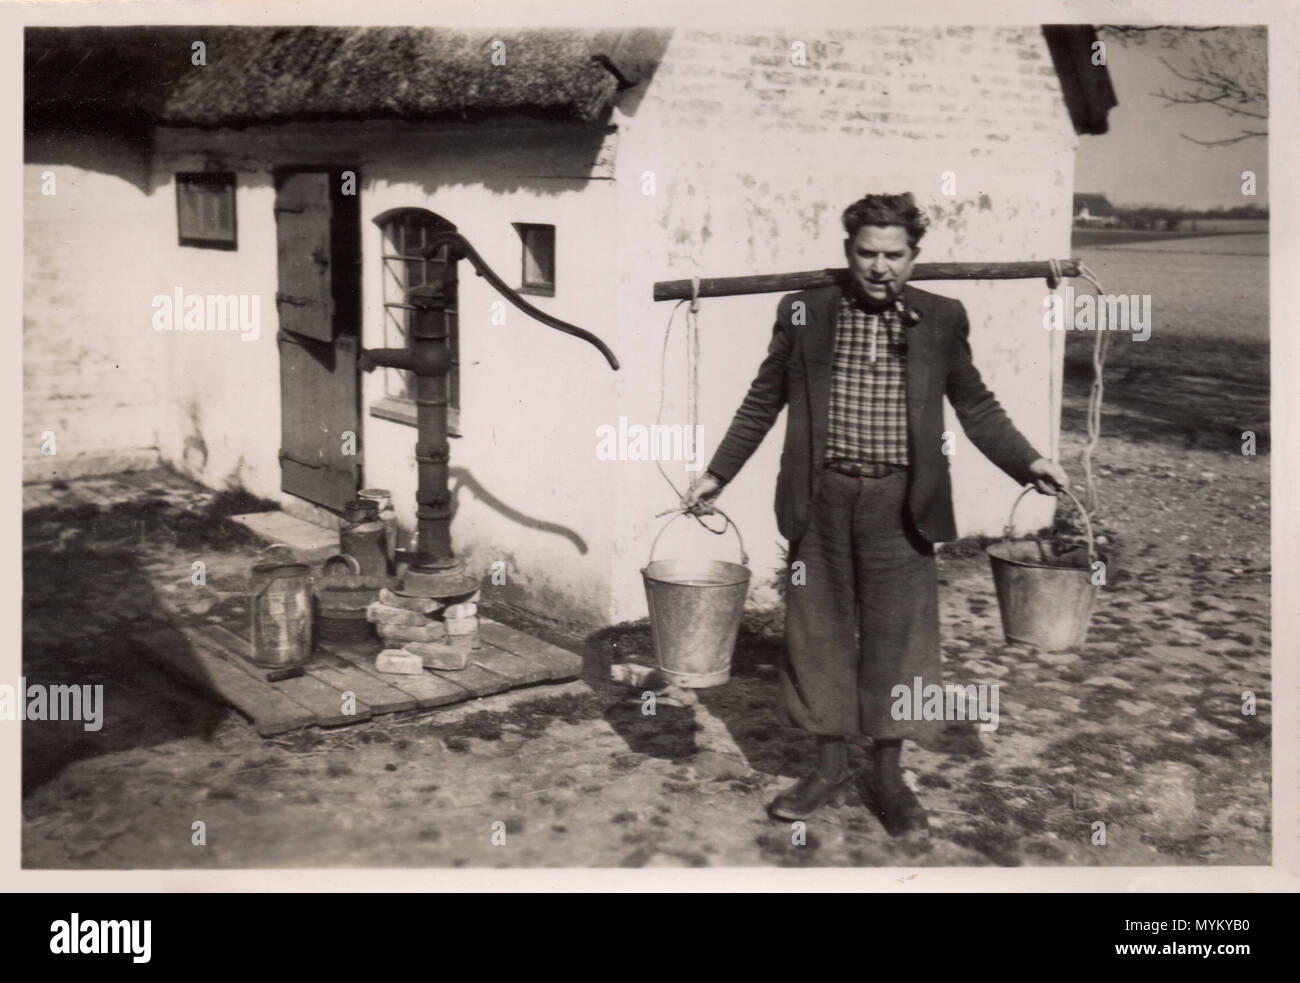 Danese un contadino, circa 1925, al di fuori del suo cottage con tetto in paglia. Egli porta due secchi da un giogo sul suo retro, probabilmente con acqua dalla vecchia pompa proprio dietro di lui; egli indossa una camicia di camicia a quadretti e un tubo, come egli sorride per il suo ritratto da adottare. Foto Stock